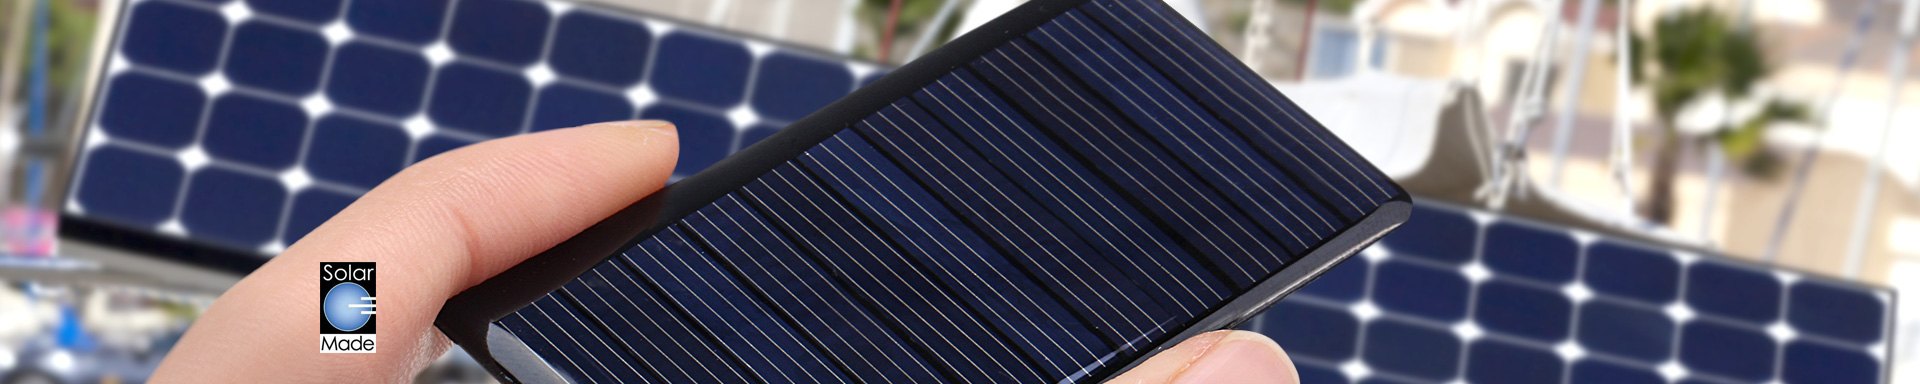 Solar Made Solar & Portable Power